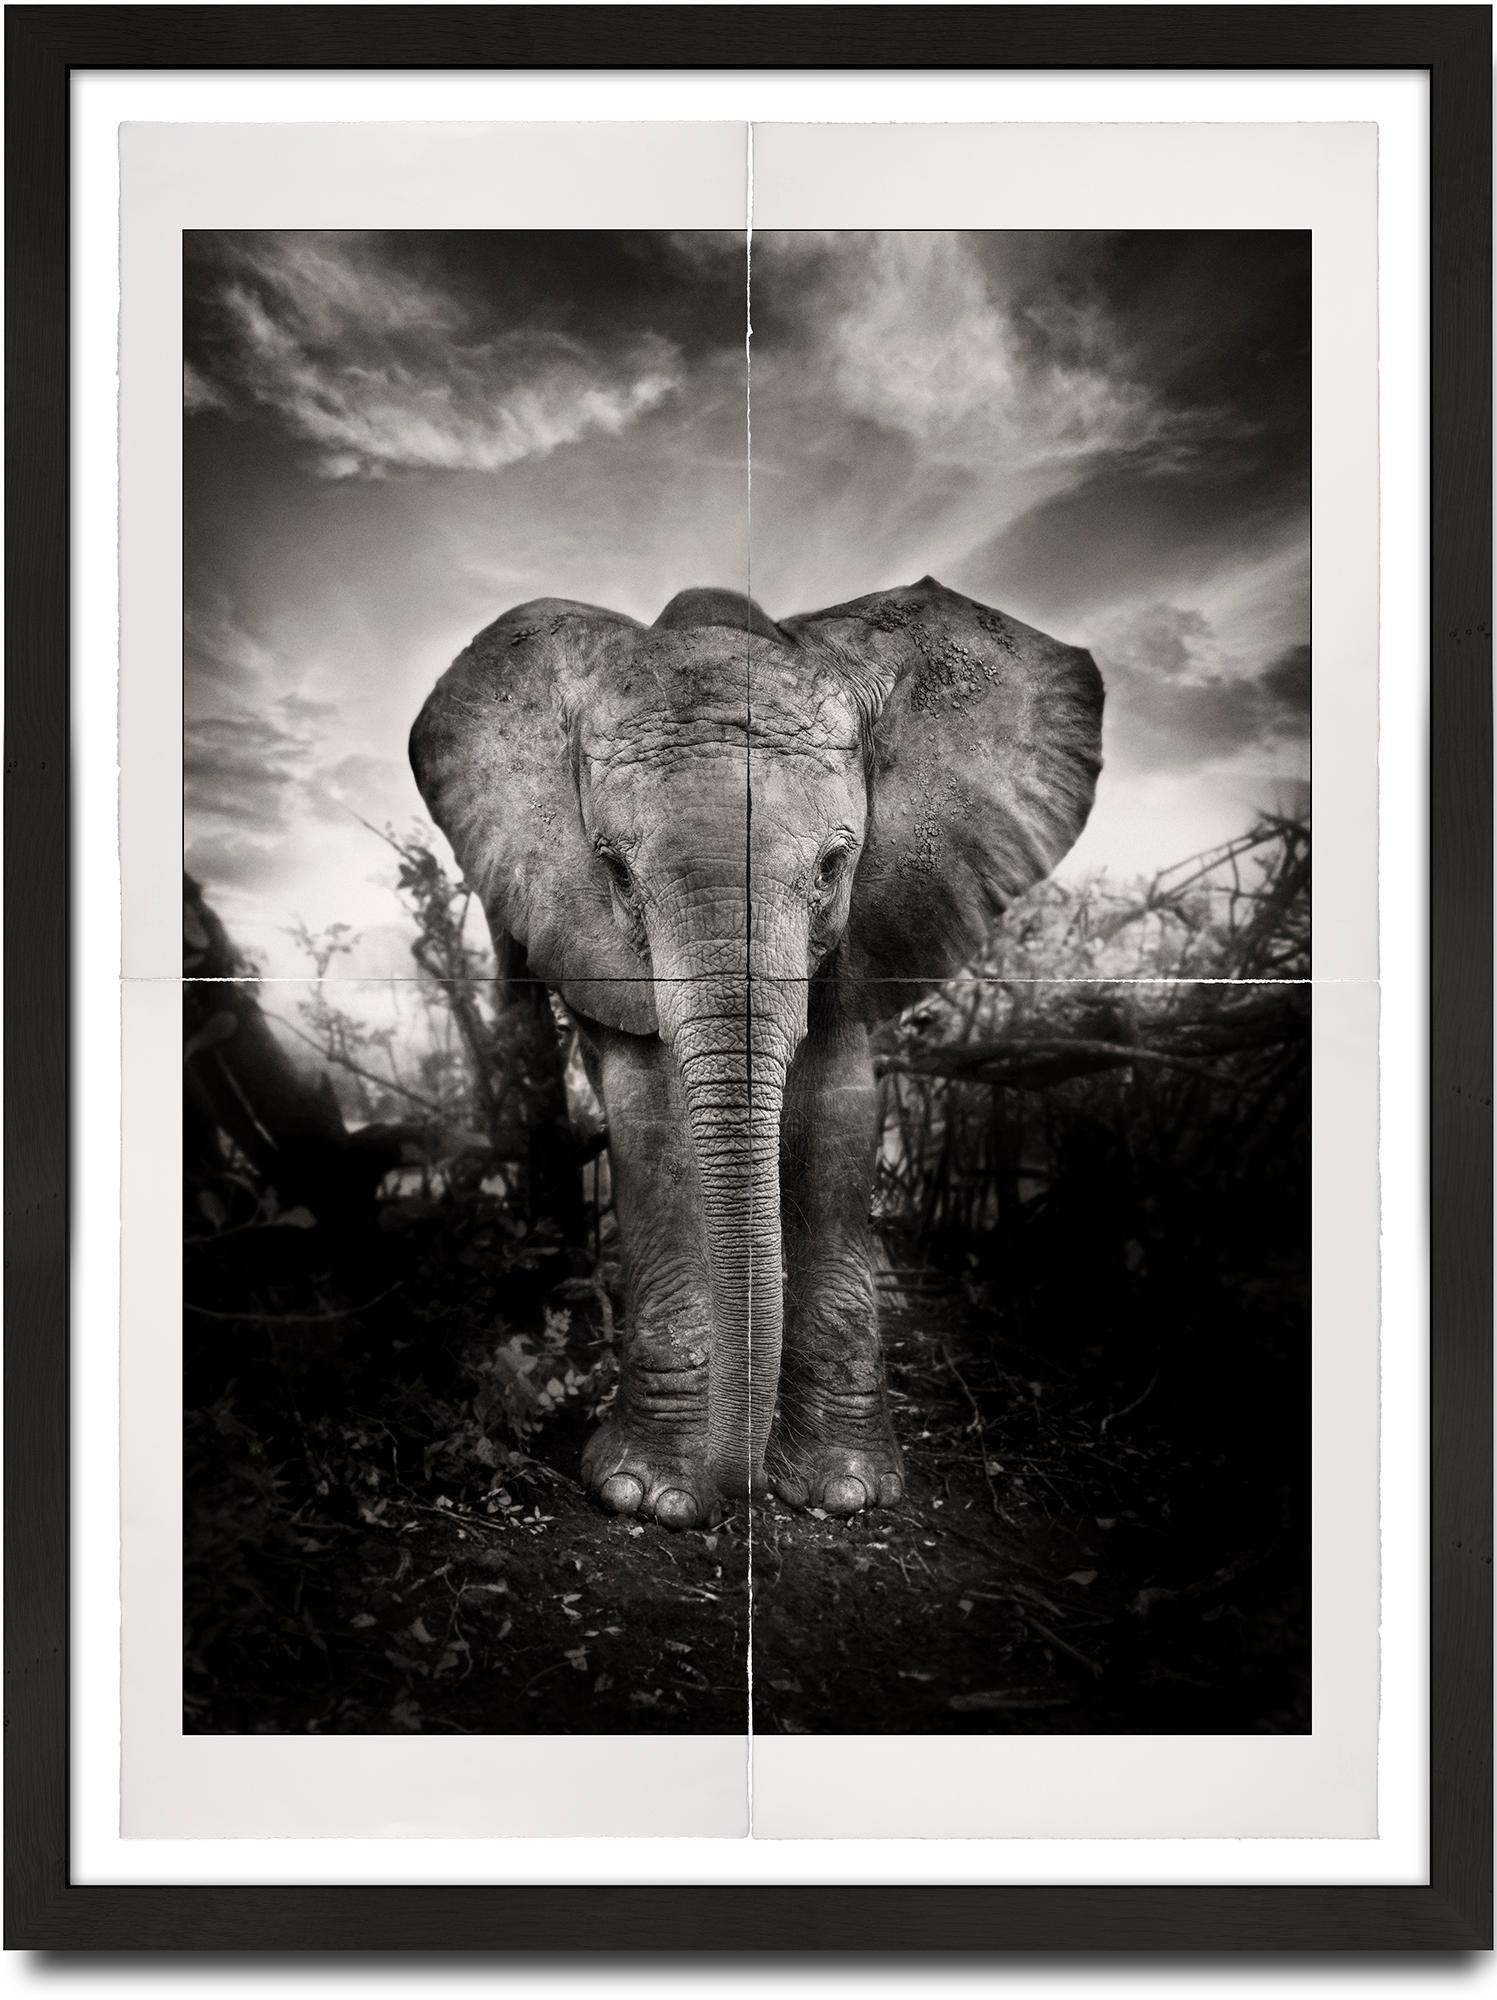 Joachim Schmeisser Portrait Photograph – Kibo, Platin, Tier, Tier- und Tierwelt, Schwarz-Weiß-Fotografie, Elefant